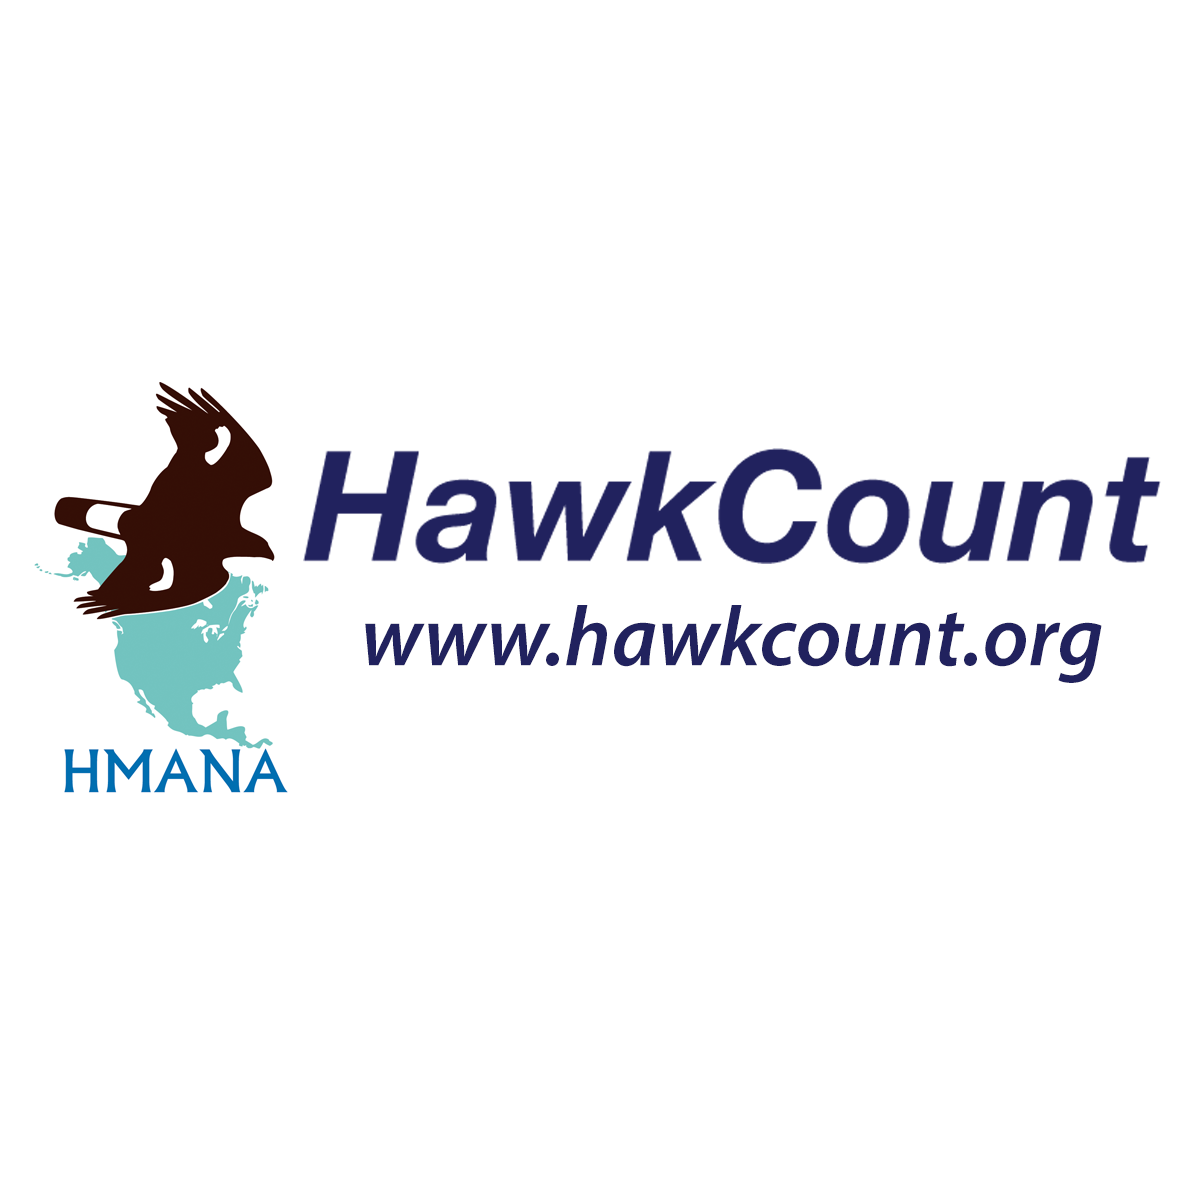 www.hawkcount.org